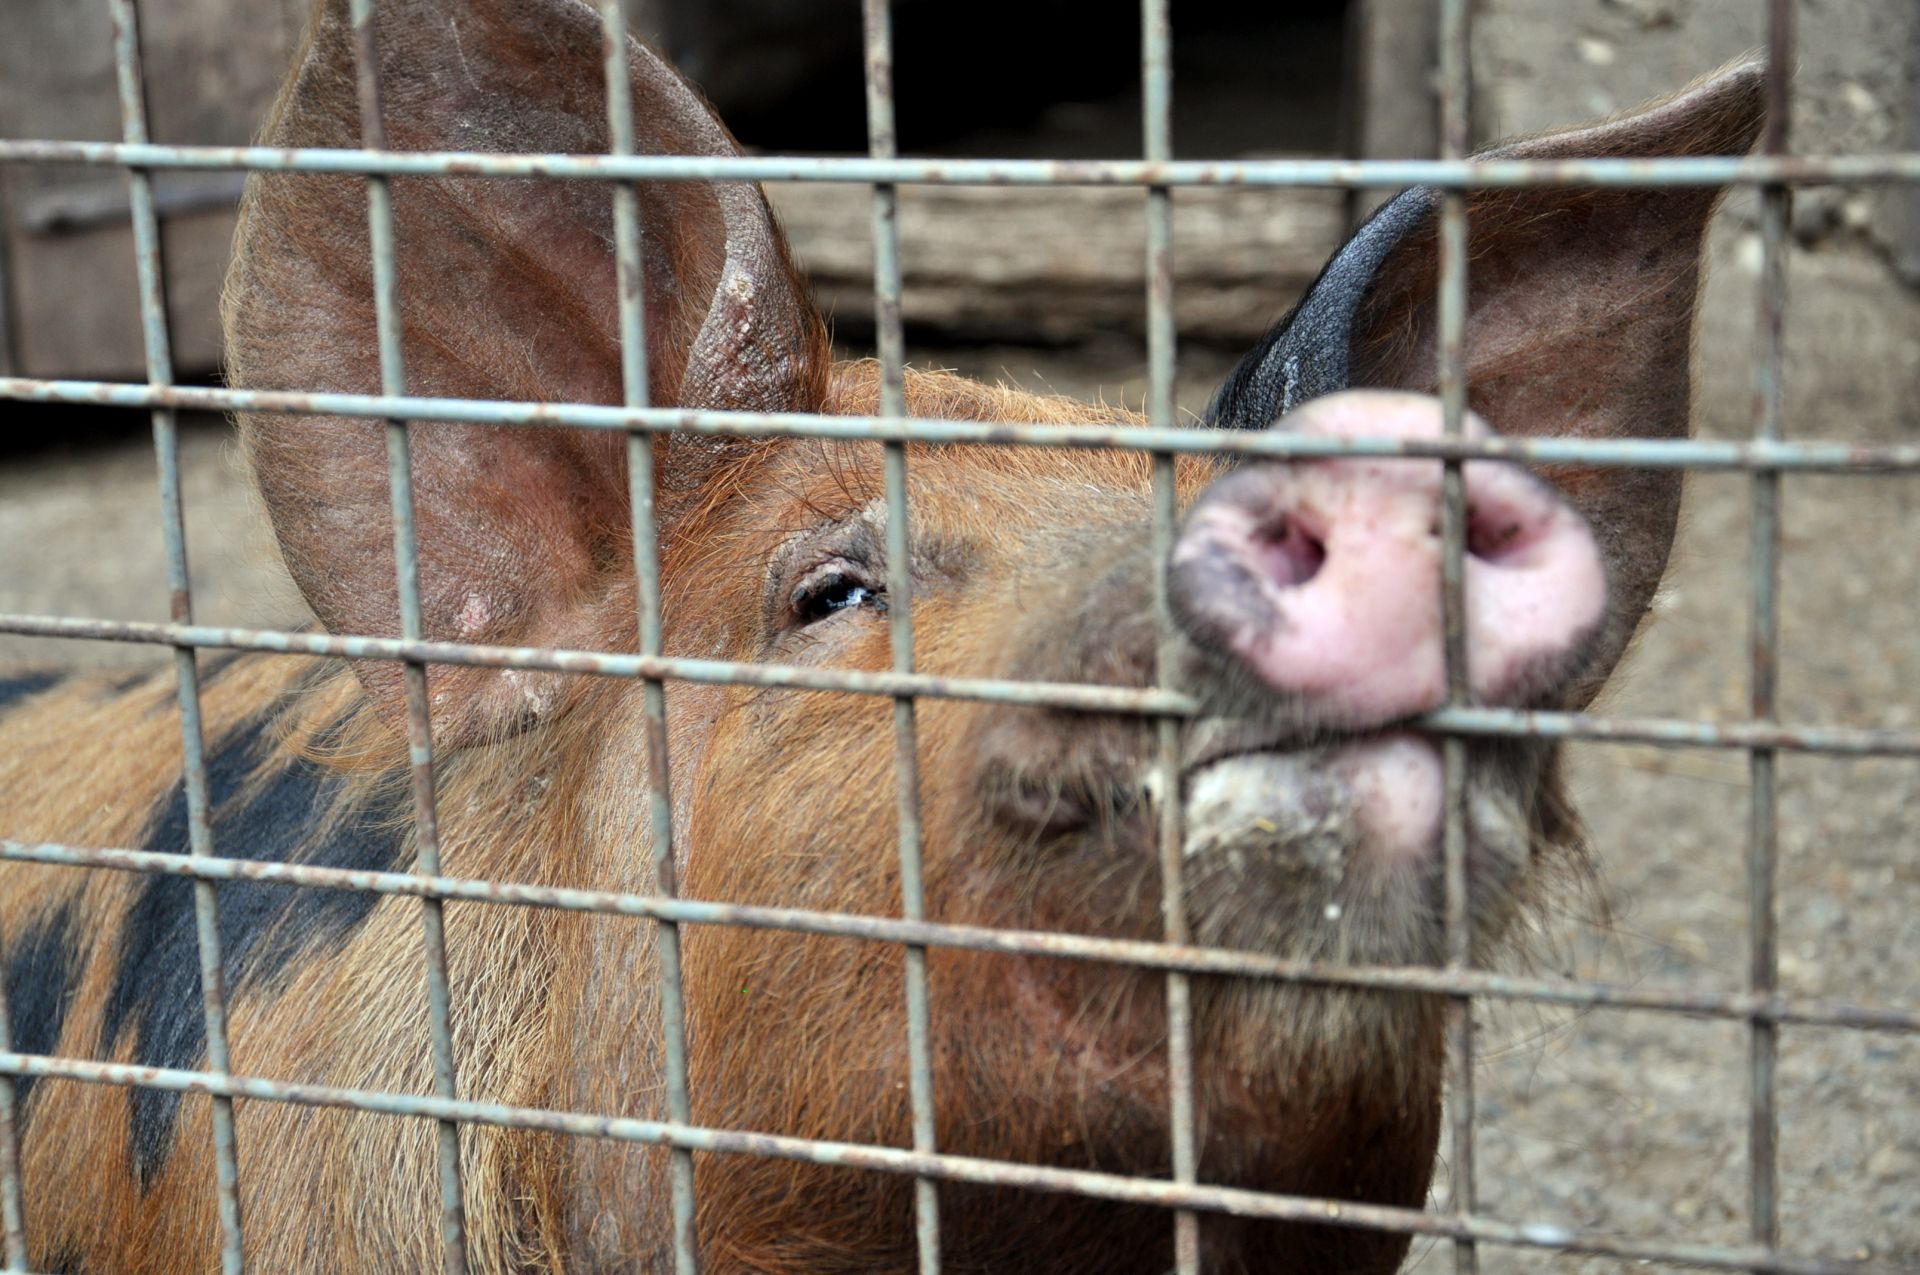 Към момента 126 хиляди прасета в индустриални свинеферми в България подлежат на унищожаване заради огнища на африканска чума